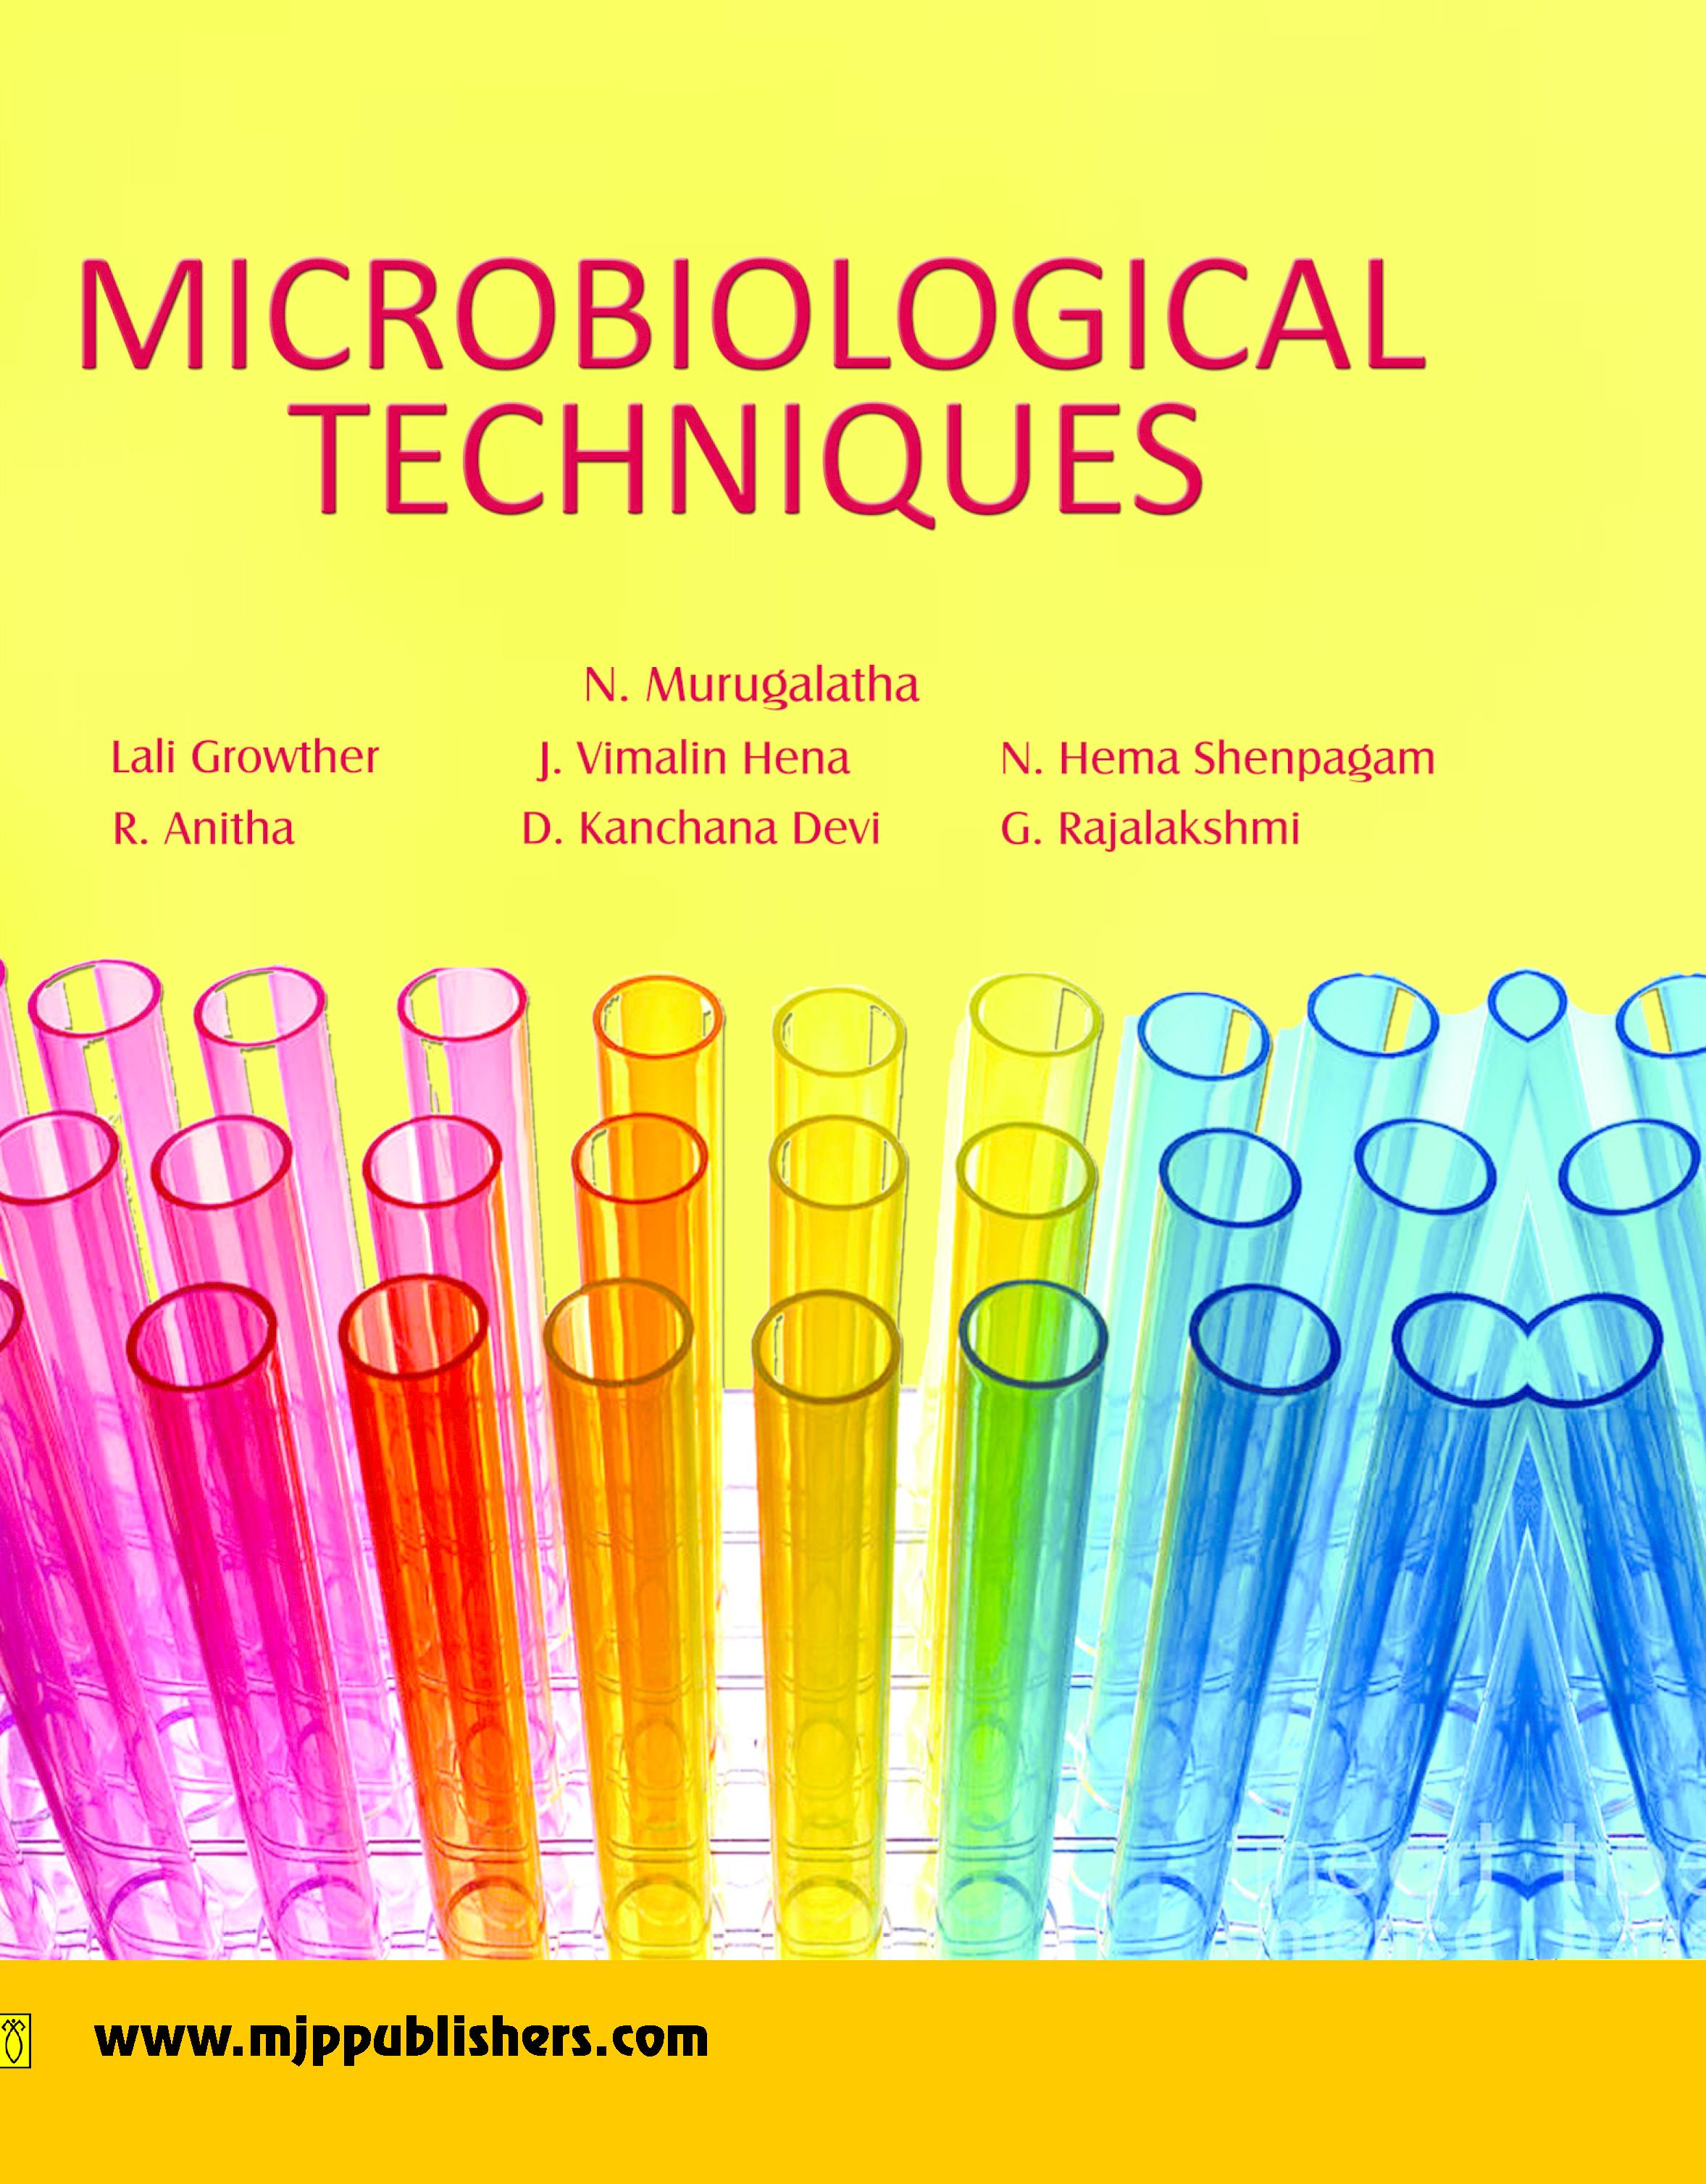 TECHNIQUES　MICROBIOLOGICAL　–　MJP　PUBLISHERS